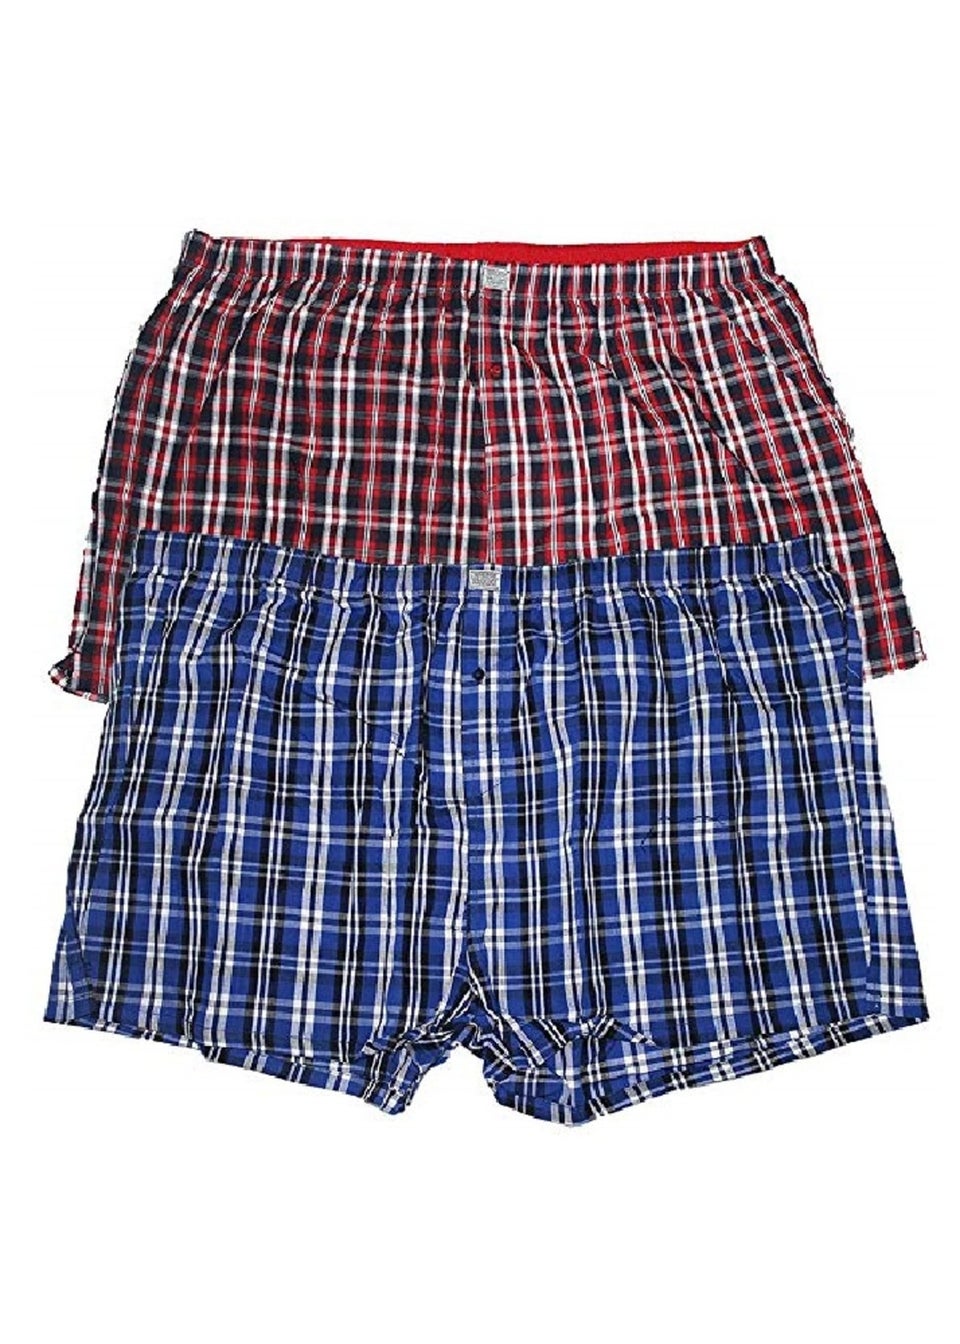 Duke Navy Plaid Kingsize Woven Boxer Shorts (Pack of 2)